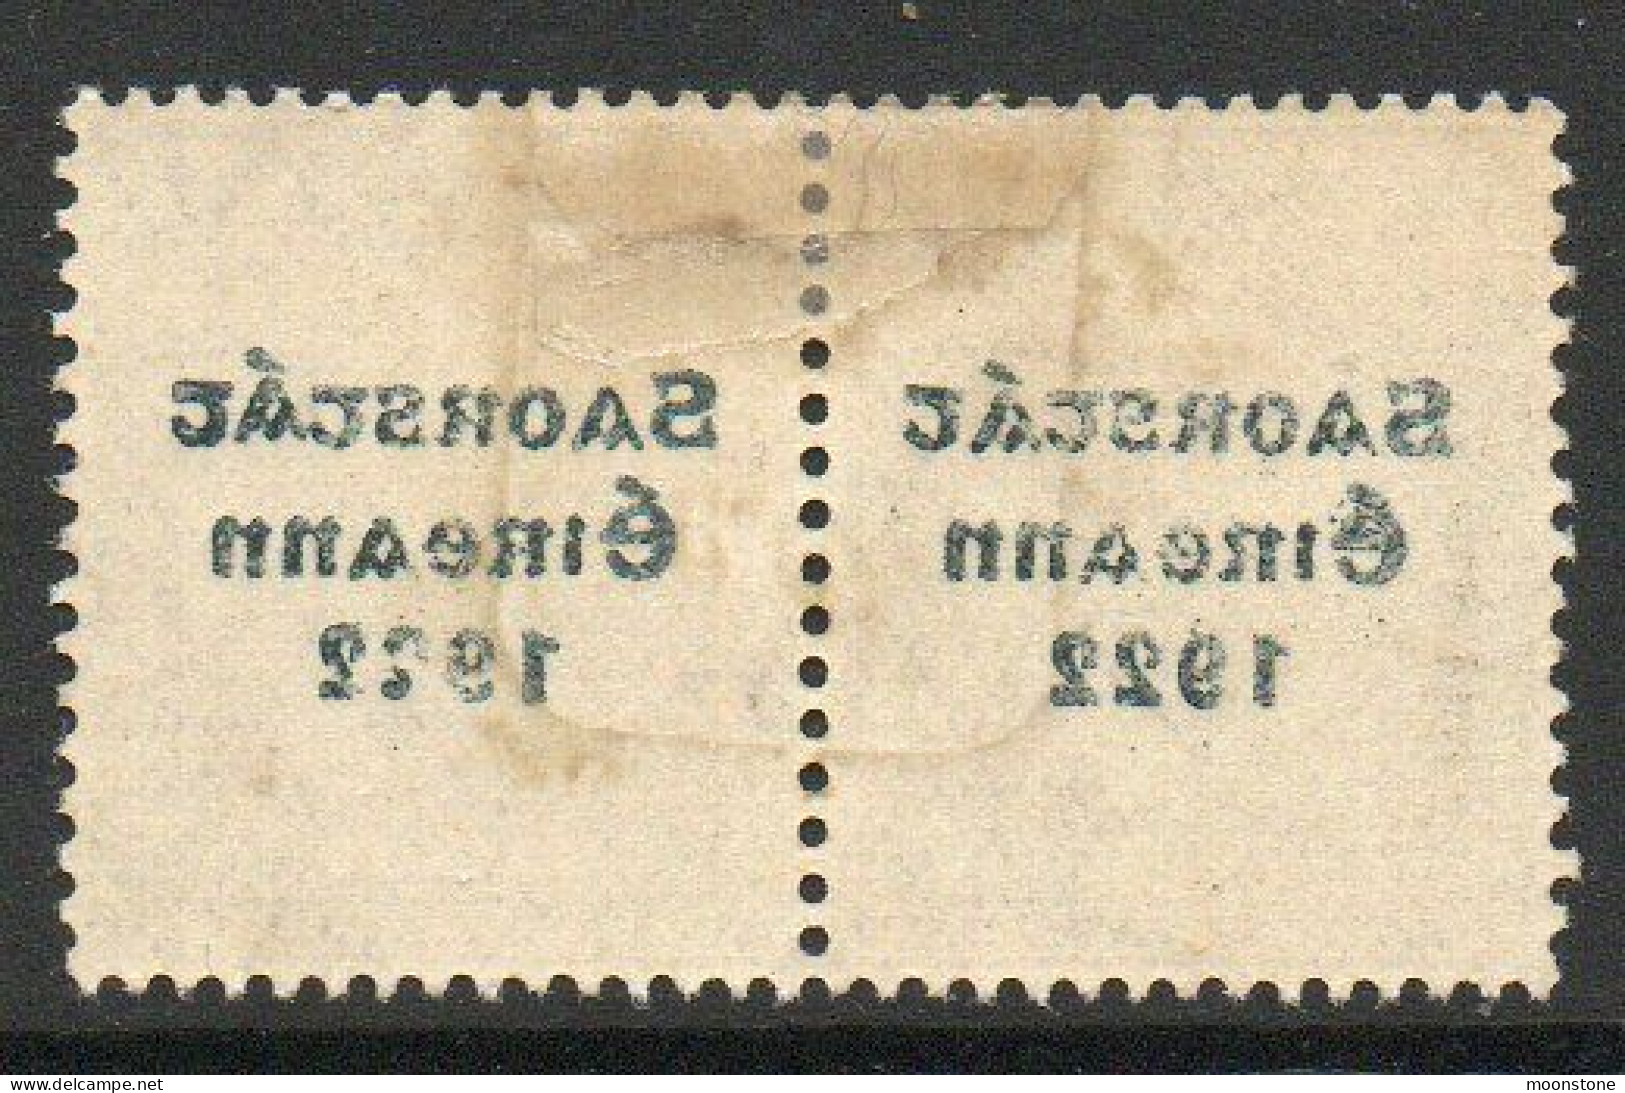 Ireland 1922-3 Saorstat Overprint On 1/- Bistre-brown Pair, Clear Offset On Reverse, SG 63 - Neufs